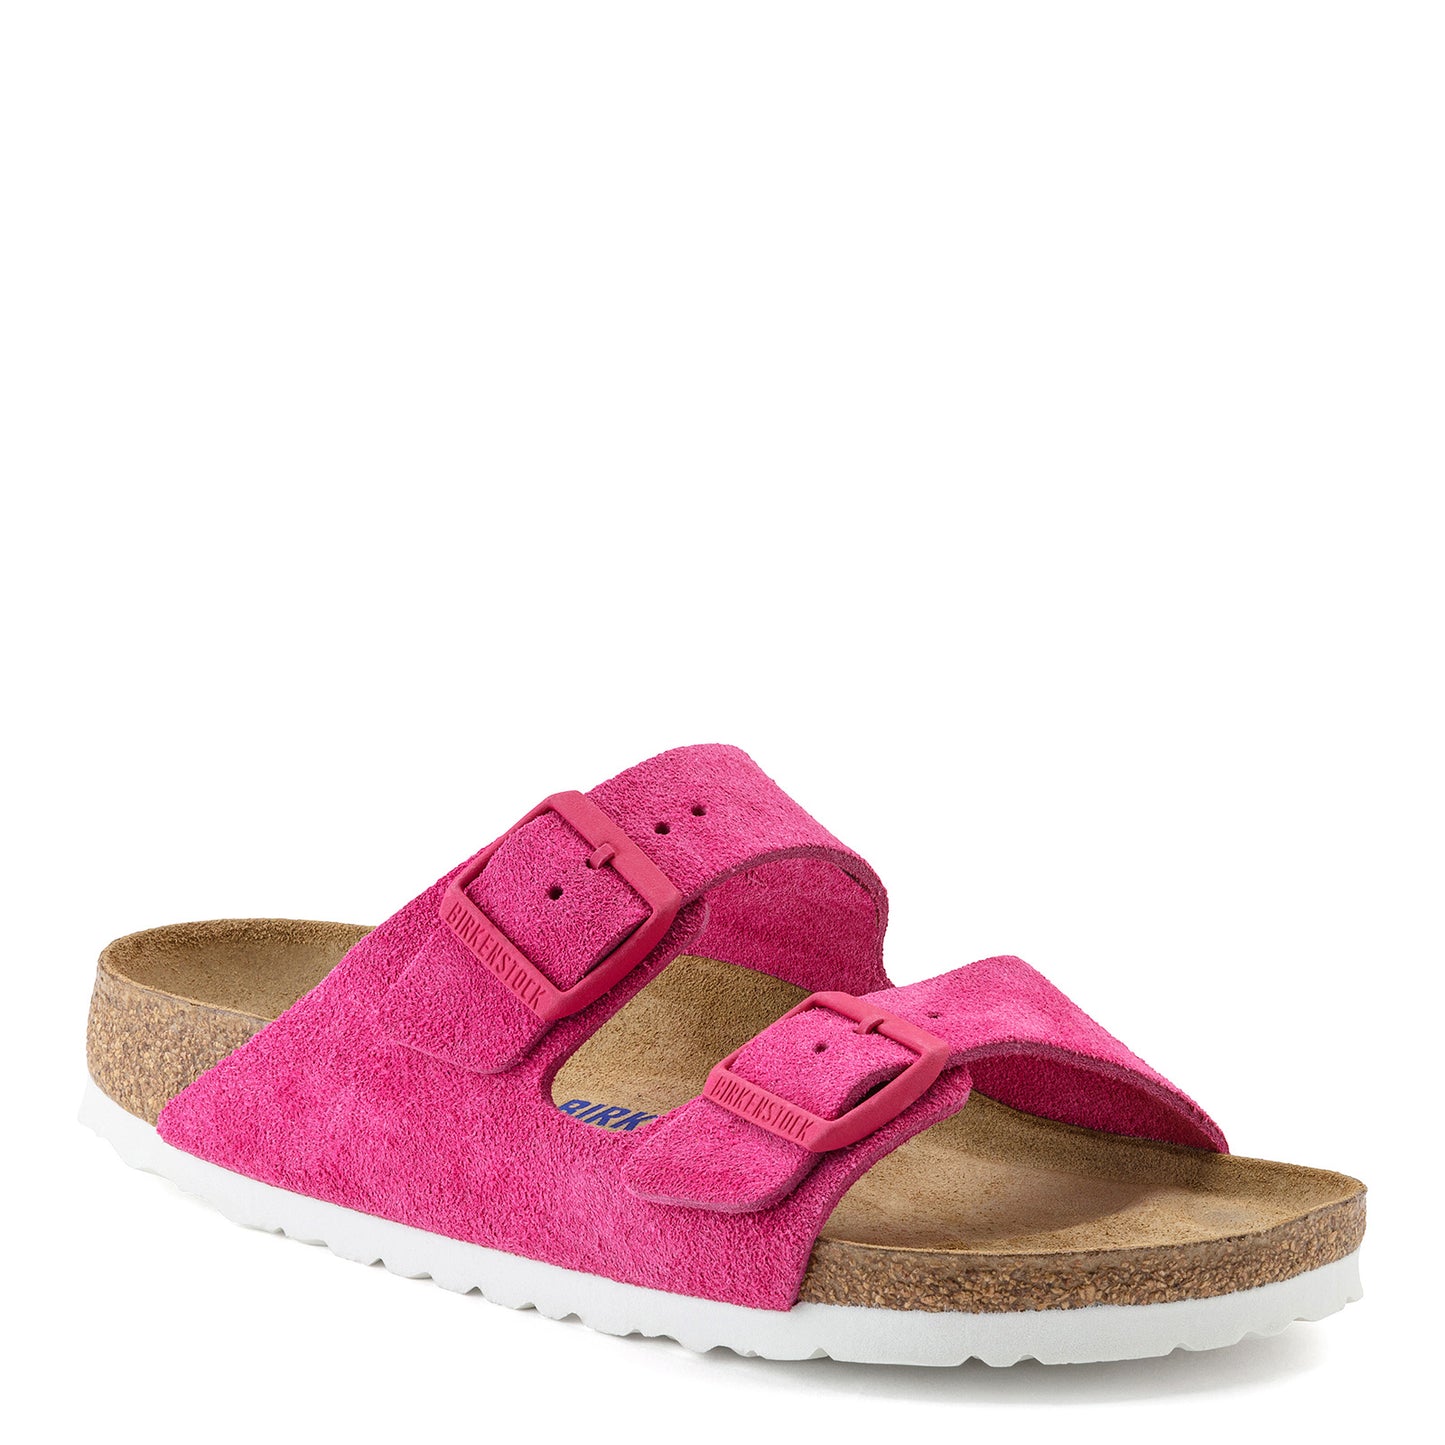 Peltz Shoes  Women's Birkenstock Arizona Soft Footbed Sandal - Narrow Width FUSCHIA 1021 442 N